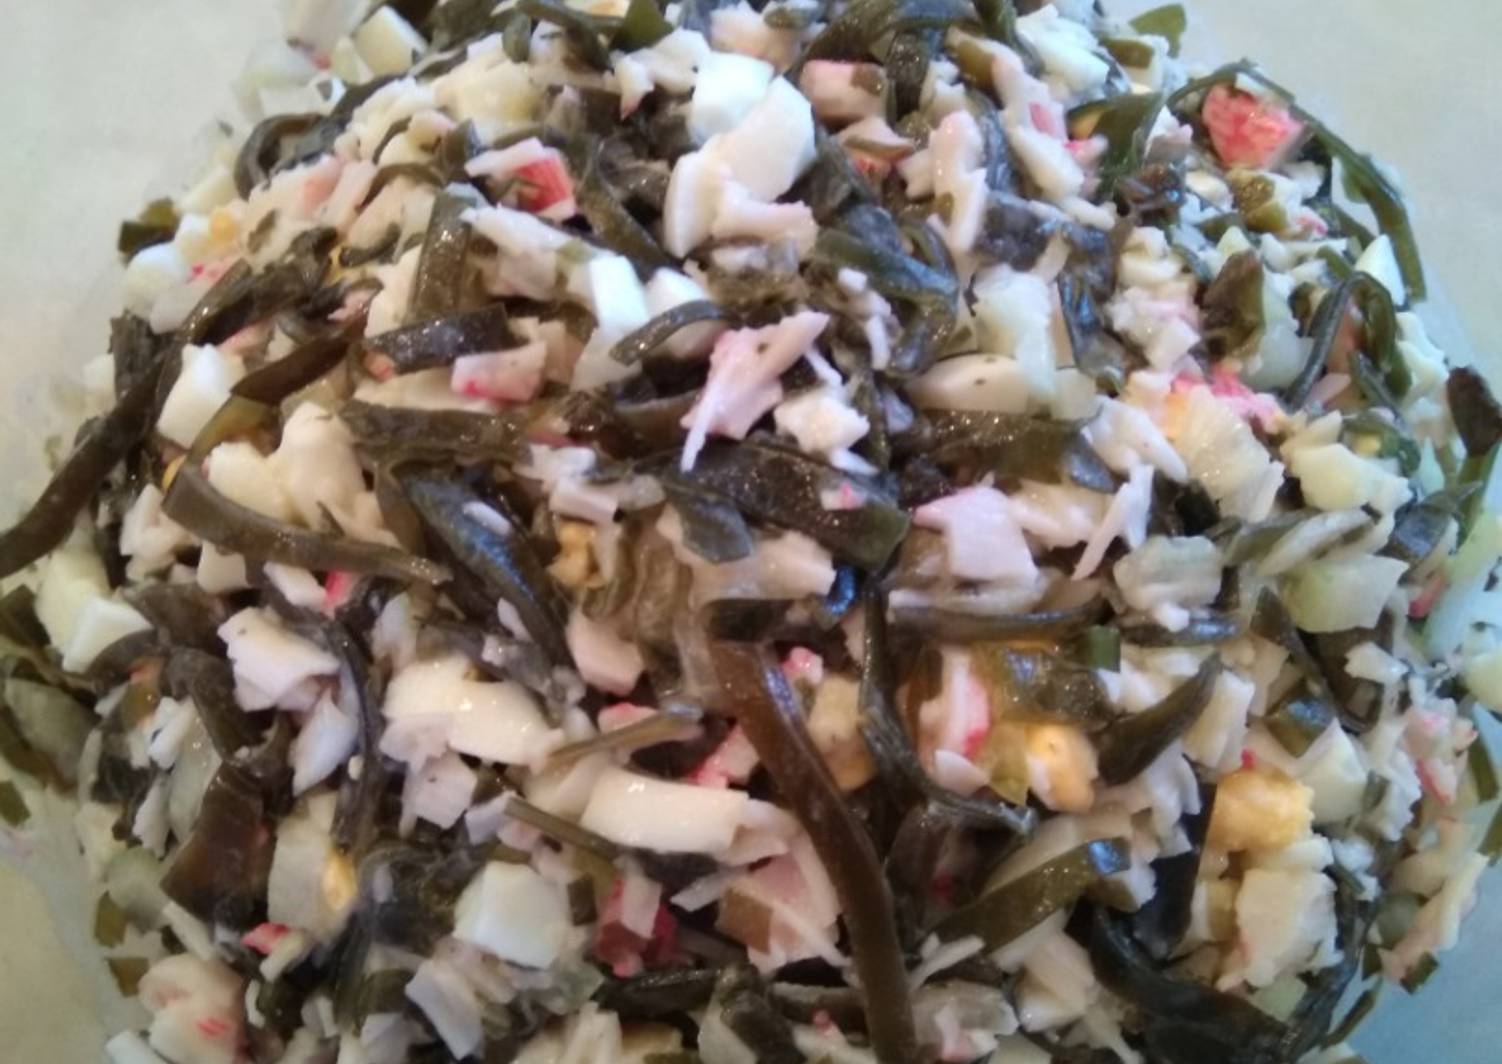 Салат из морской капусты морской рецепт с фото очень вкусный